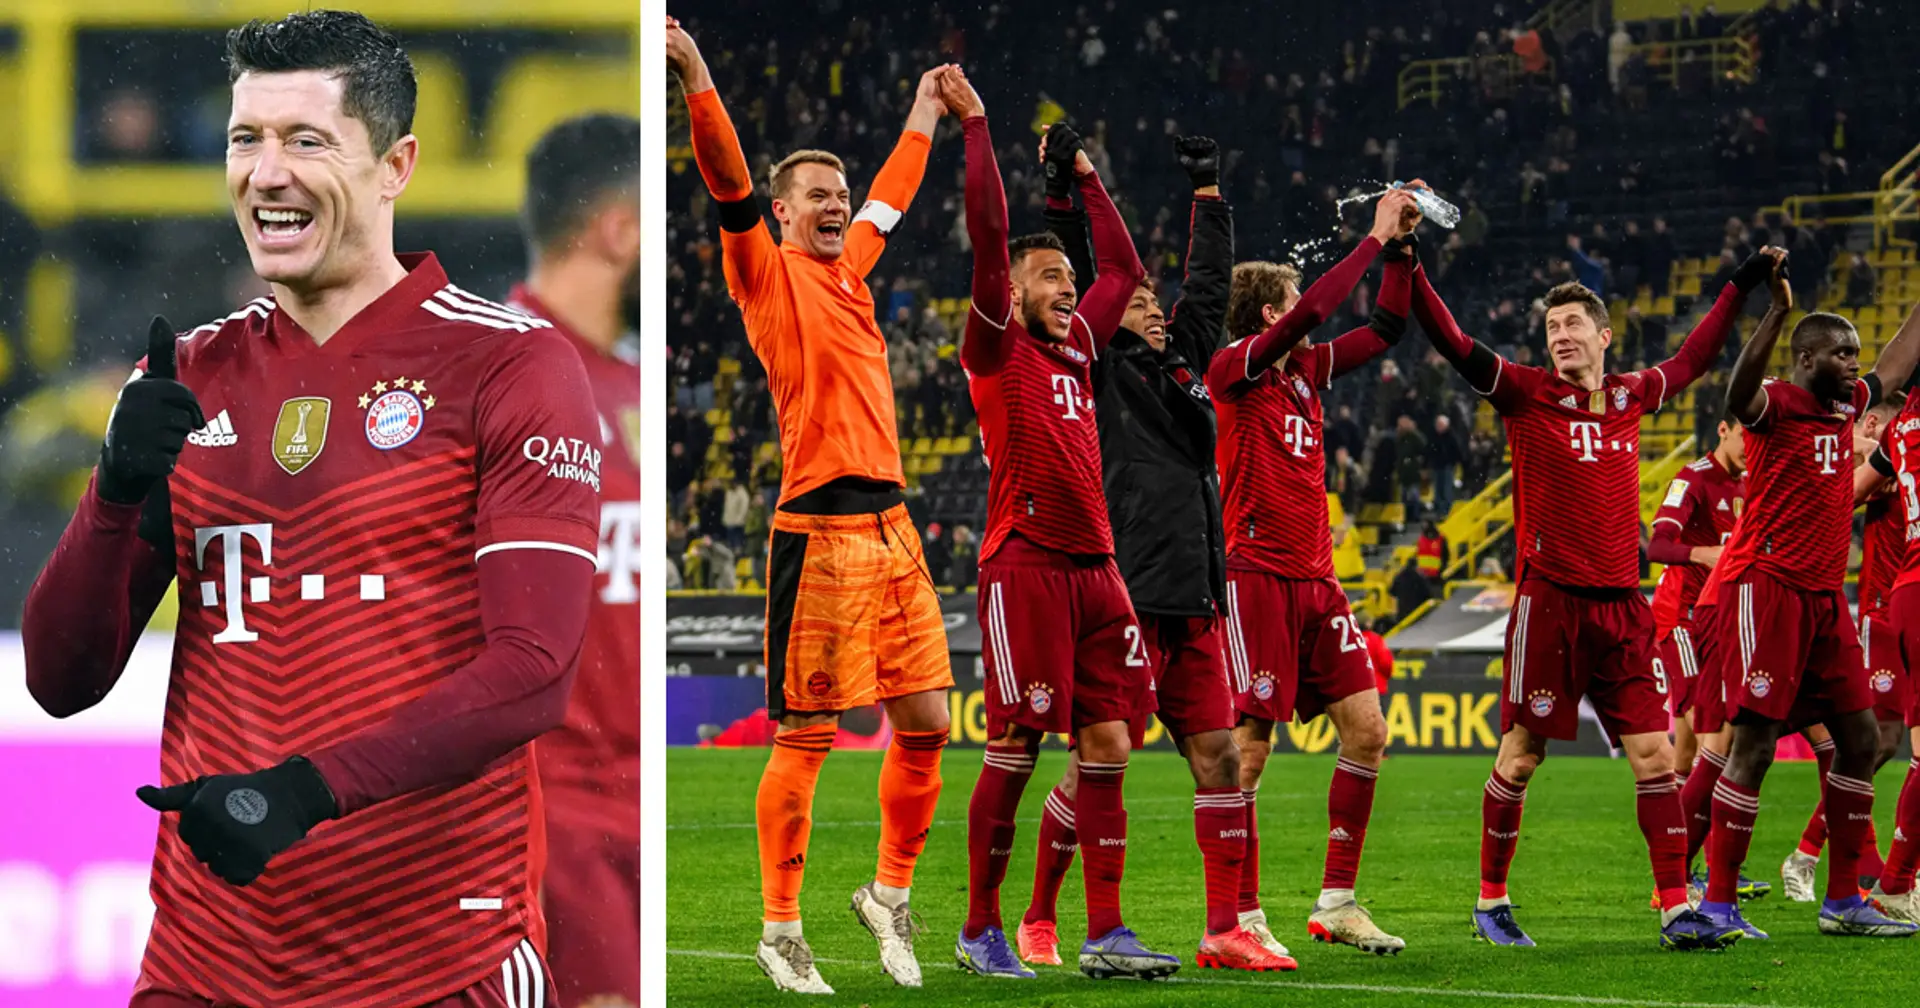 Lewandowski und Hernandez mit Glanzleistungen: Spielernoten zum 3:2-Sieg im Topspiel vs. Dortmund